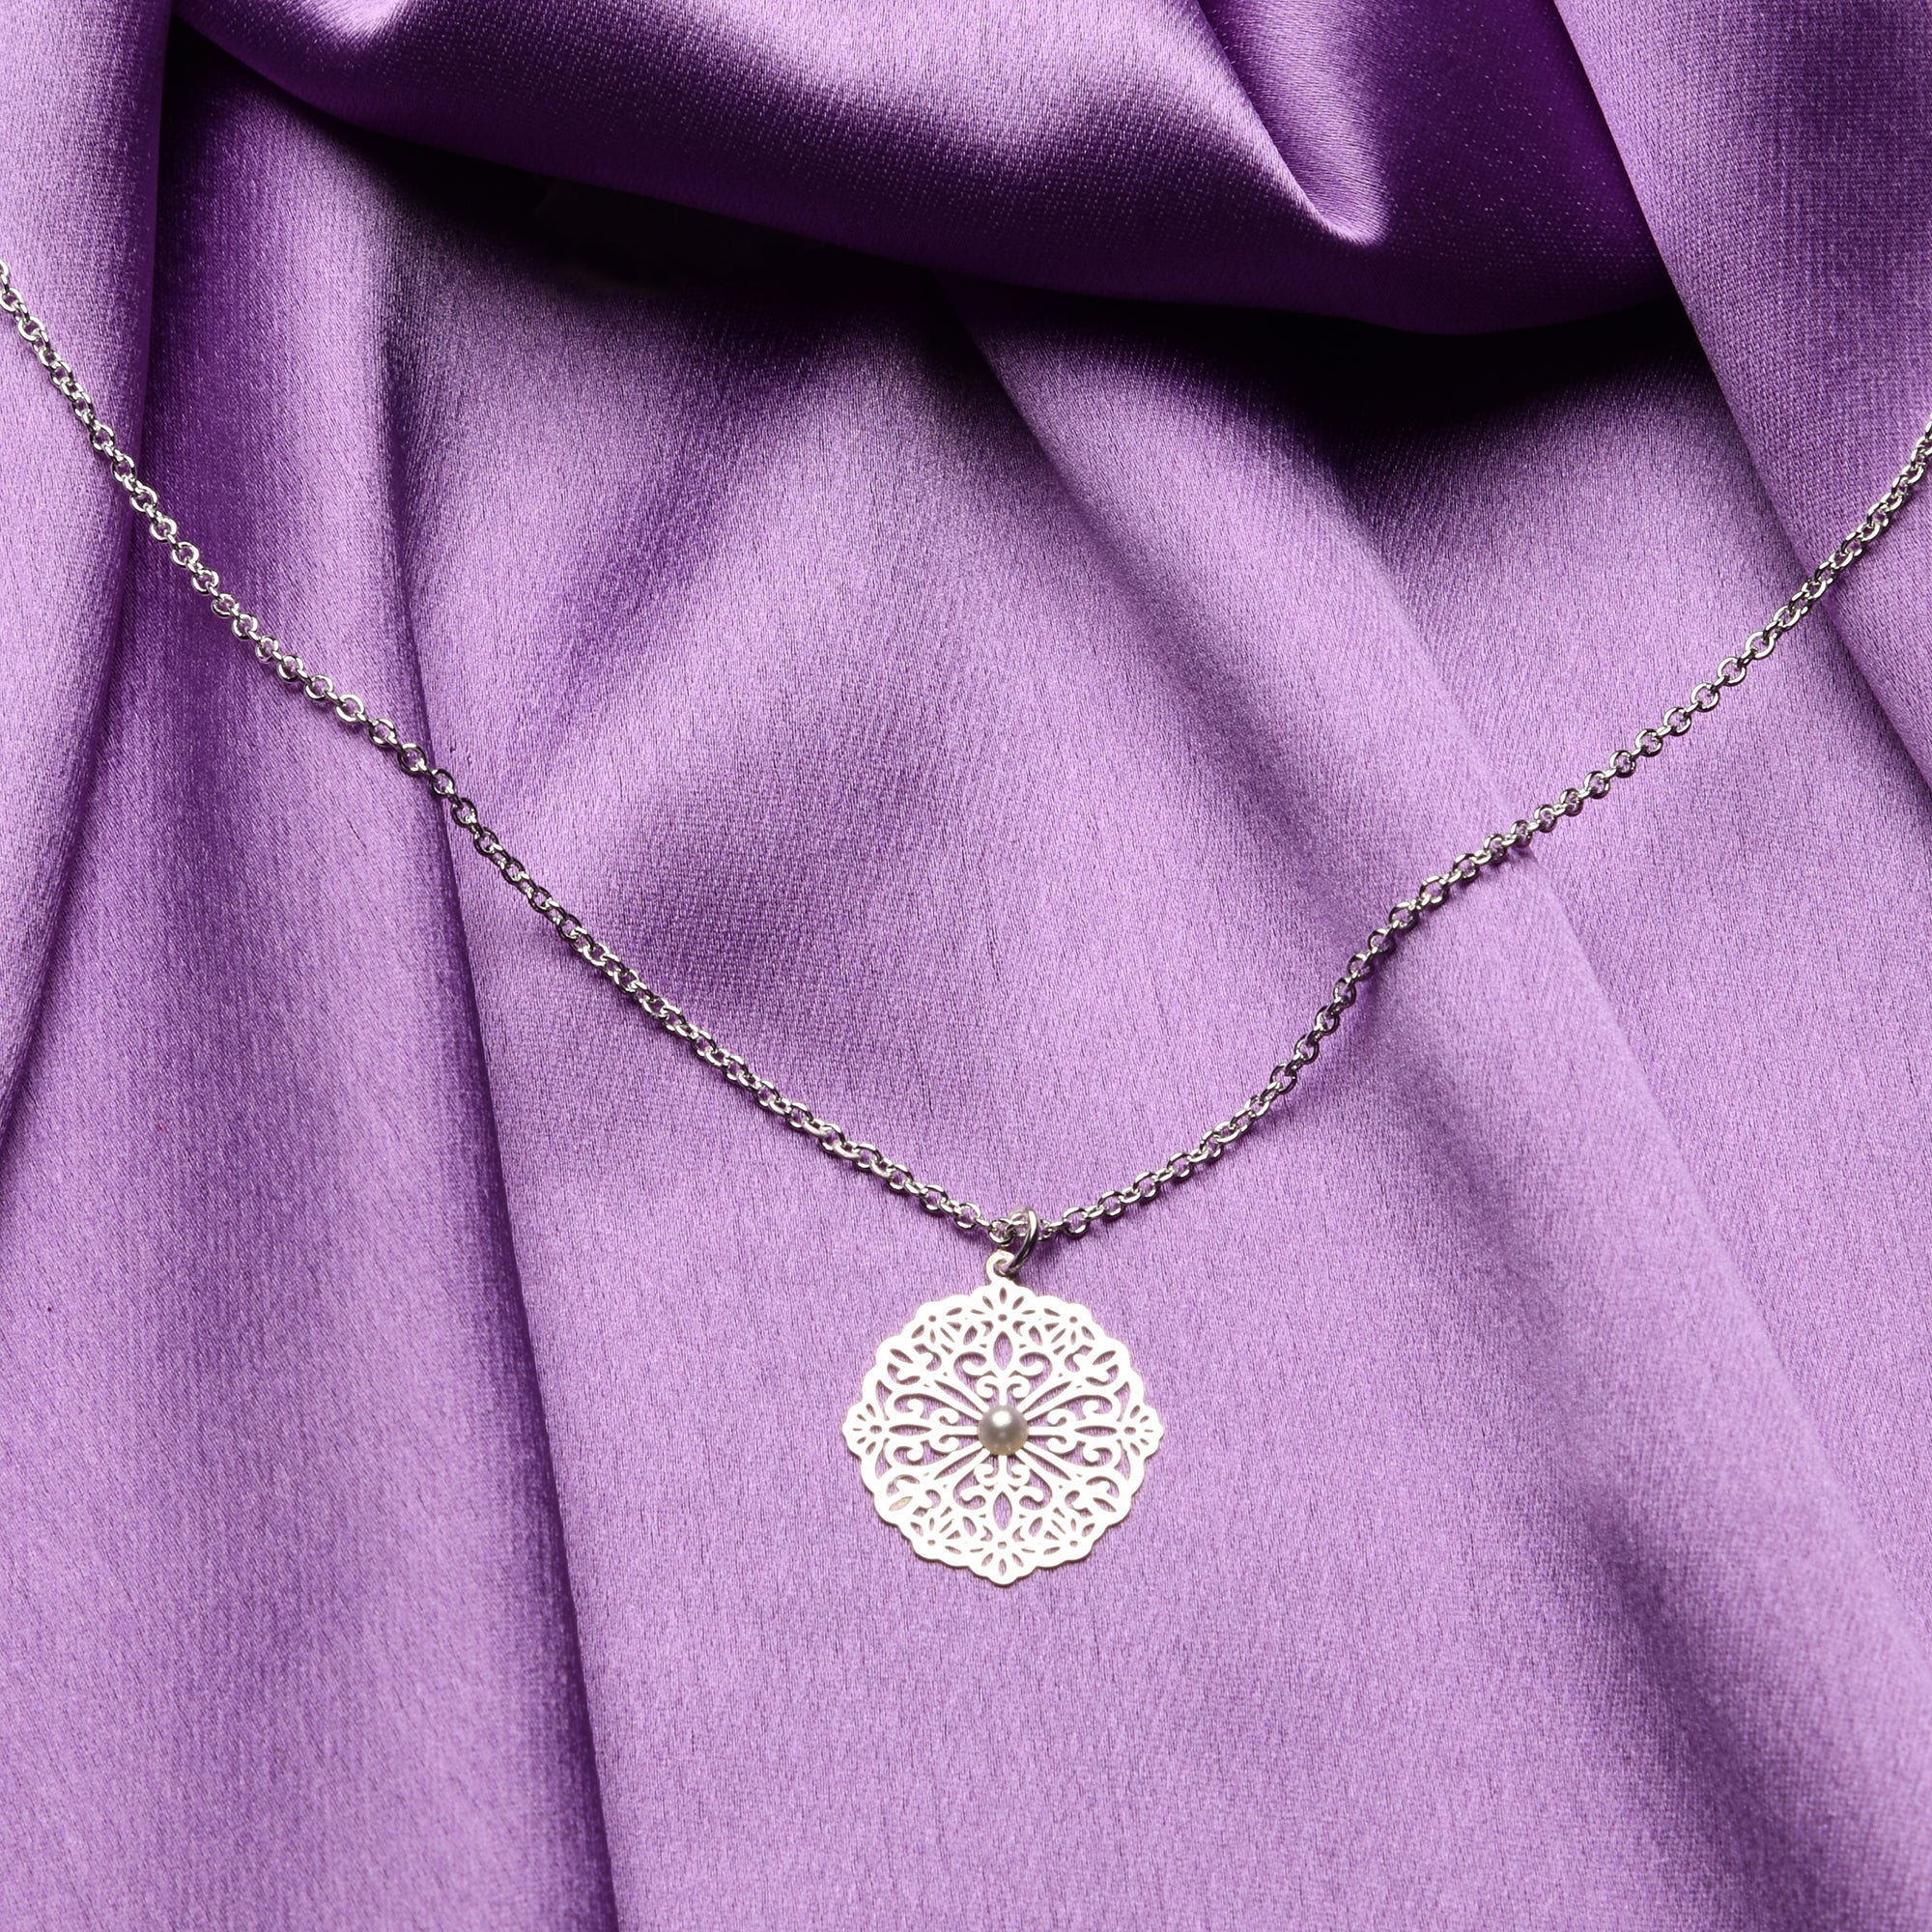 Accessorize London Women'S Silver Filgree Pearl Pendant Necklace